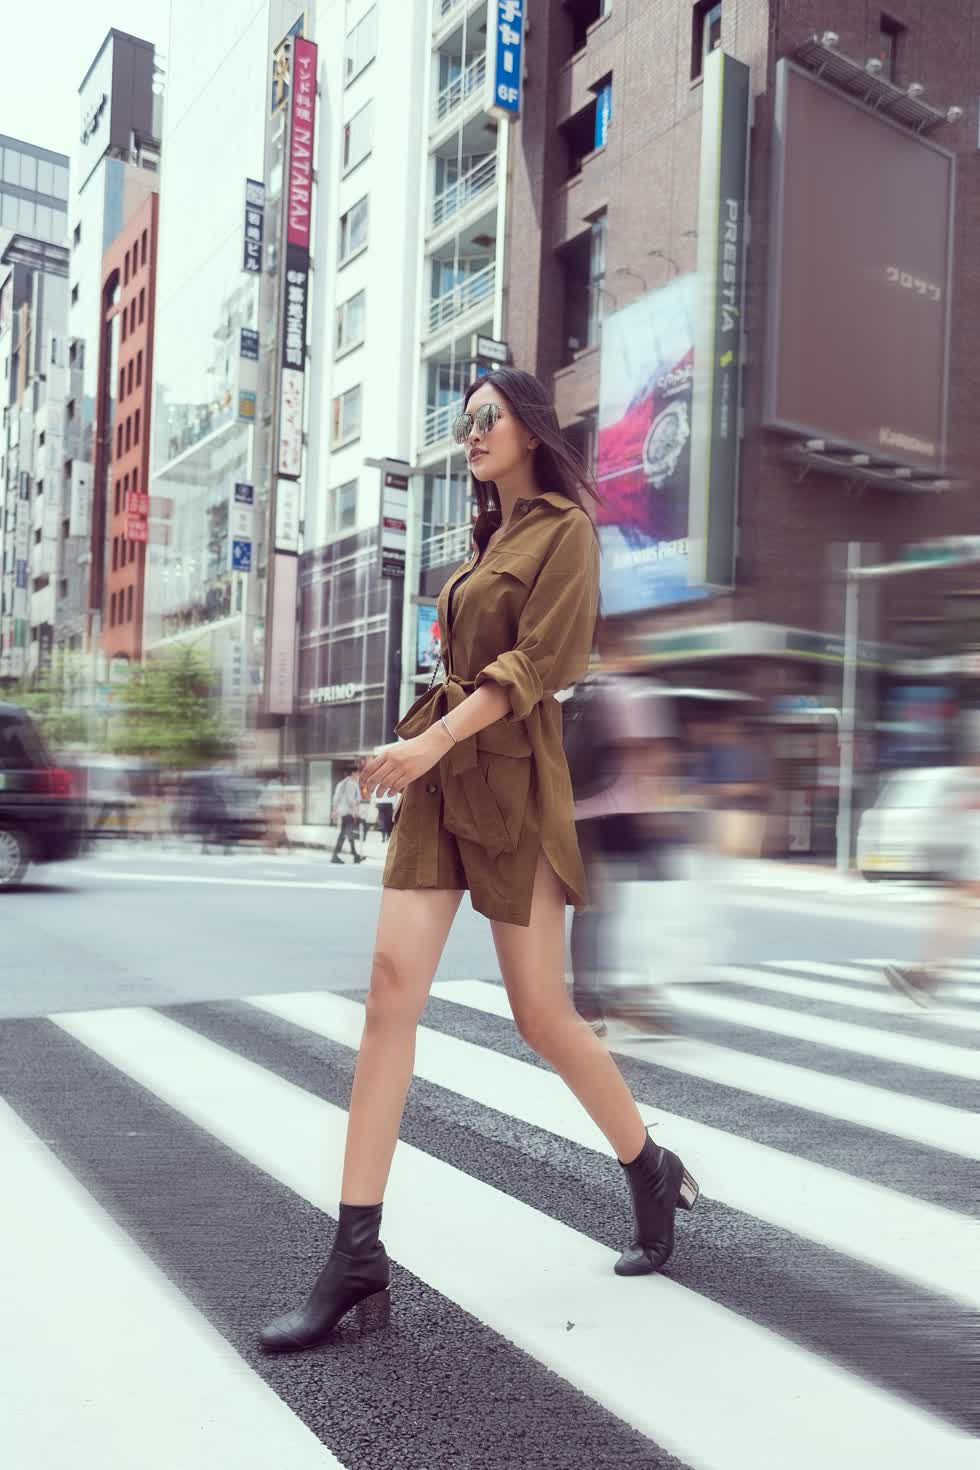 Tiểu Vy hóa nữ đặc cảnh với phong cách thời trang cá tính giữa đường phố Nhật Bản